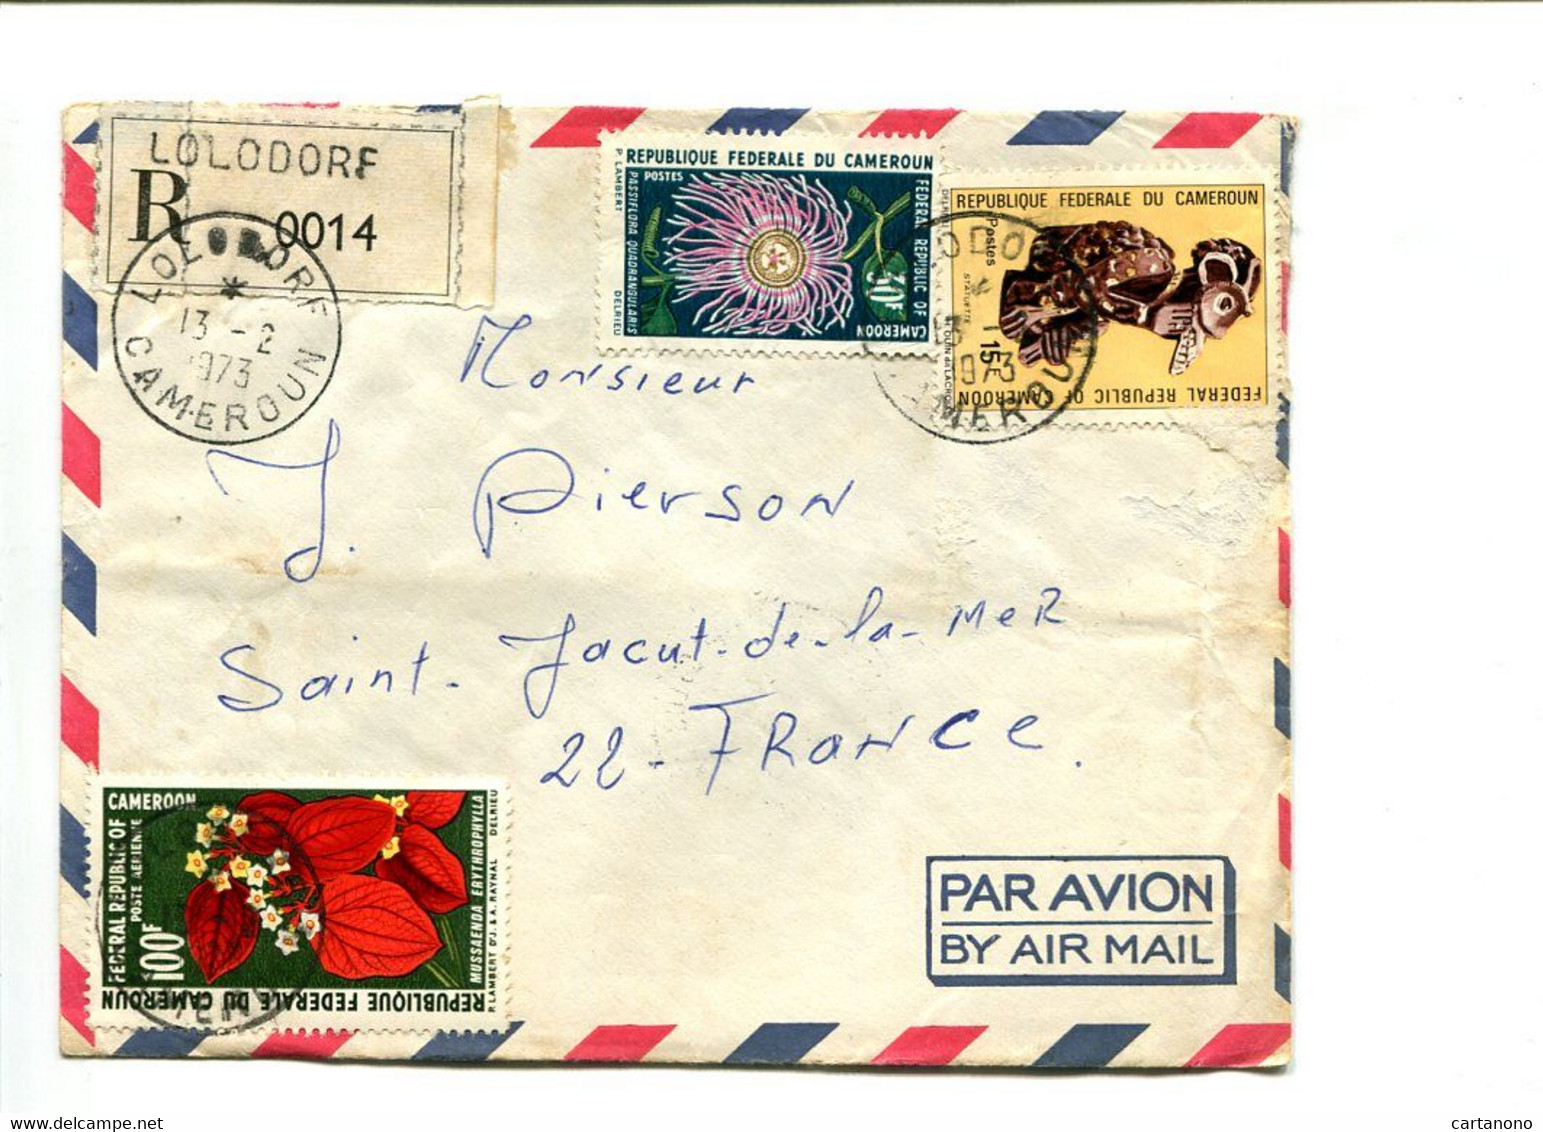 CAMEROUN Lolodore 1973 -  Affranchissement Sur Lettre Recommandée Par Avion - Fleurs - Cameroun (1960-...)